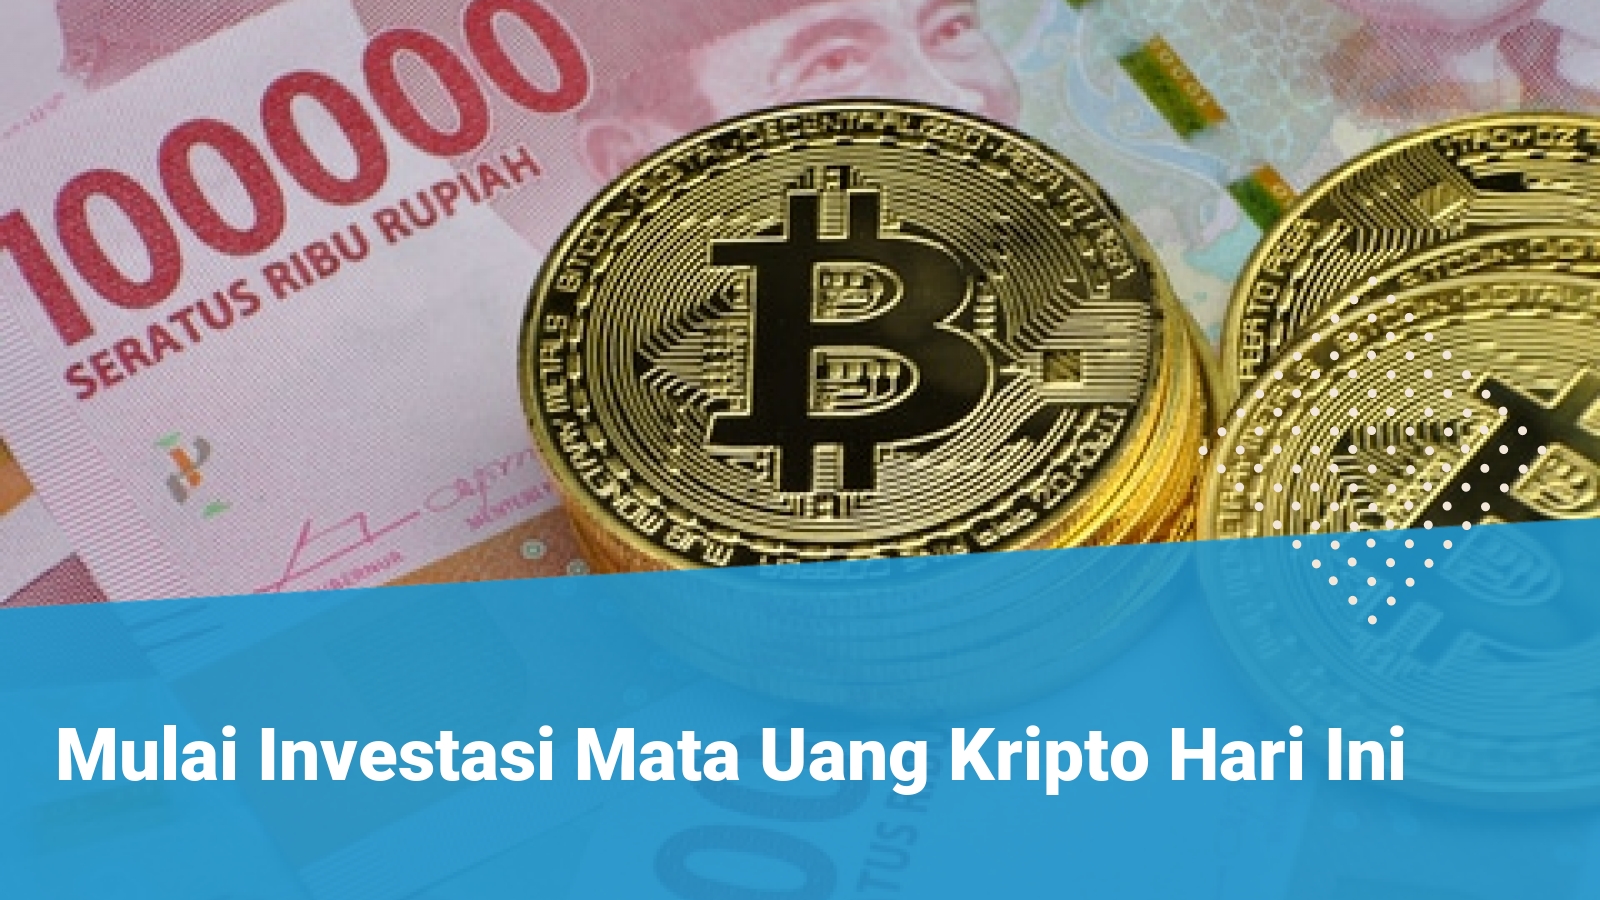 Mata Uang Kripto (Cryptocurrency) - Financer.com